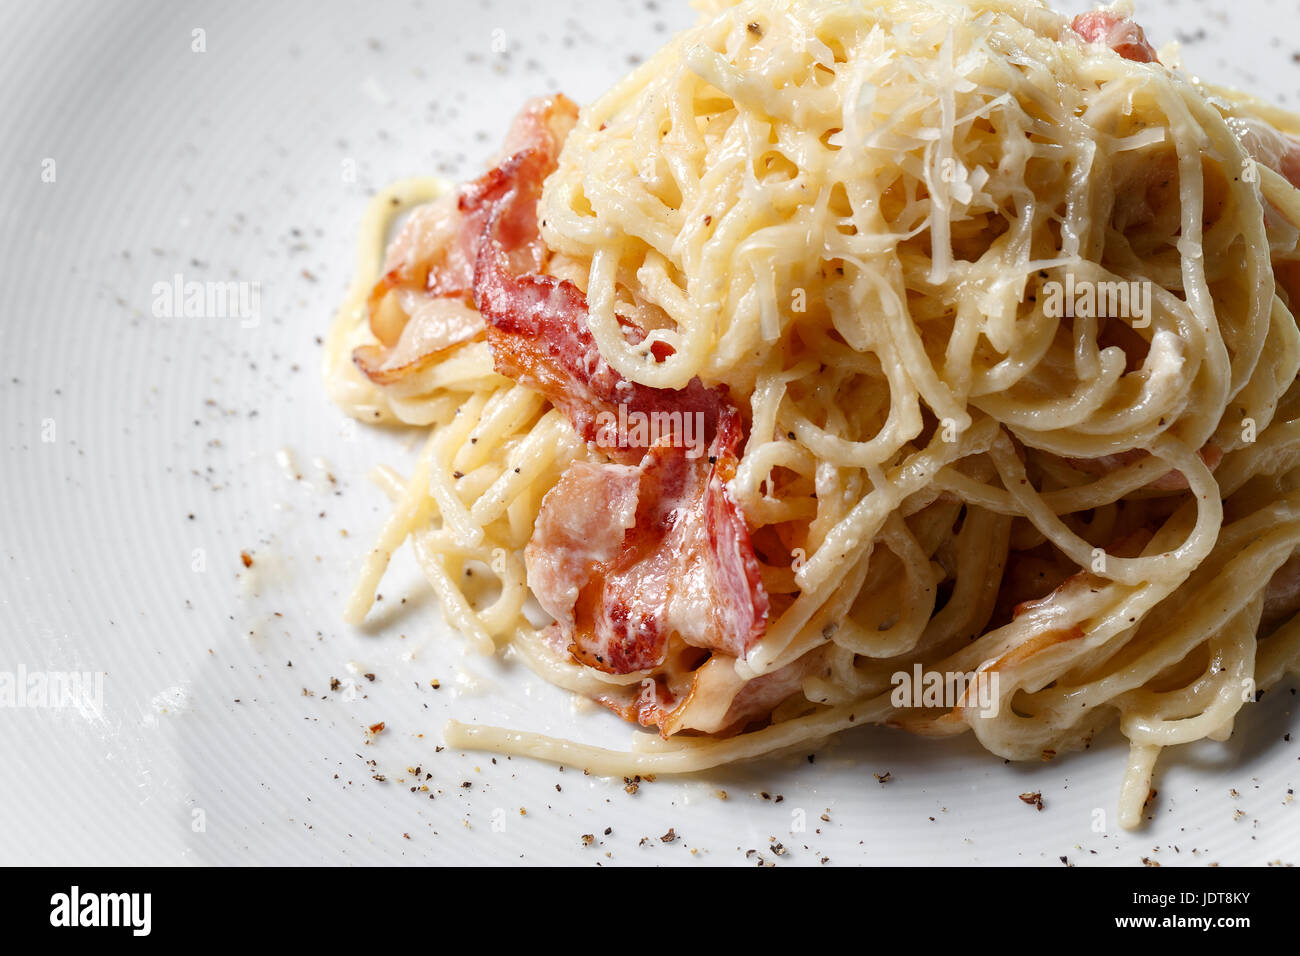 Spaghetti carbonara on a white background Stock Photo